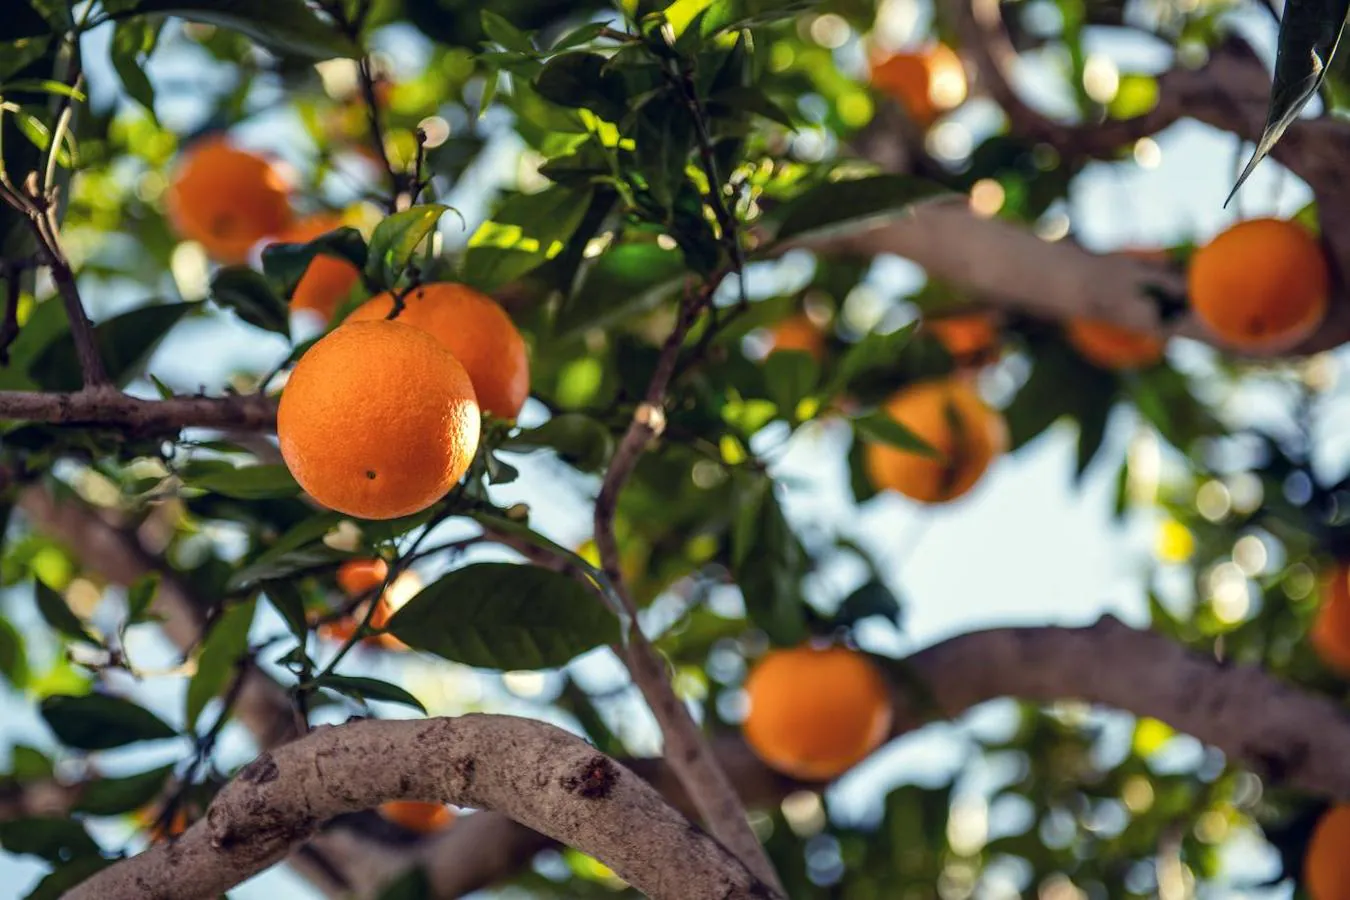 Naranjas. Al igual que con las verduras, las frutas, en general, son nuestras aliadas a la hora de combatir el estrés. Aun así, debemos destacar las <a href="https://www.abc.es/bienestar/alimentacion/abci-naranja-201911251834_noticia.html">naranjas</a>, gracias a su aporte de fibra (2 gramos de cada 100), de vitamina C (50 miligramos) y su porte de azúcares saludables, buena herramienta para calmar las ganas de tomar azúcar de una forma saludable.